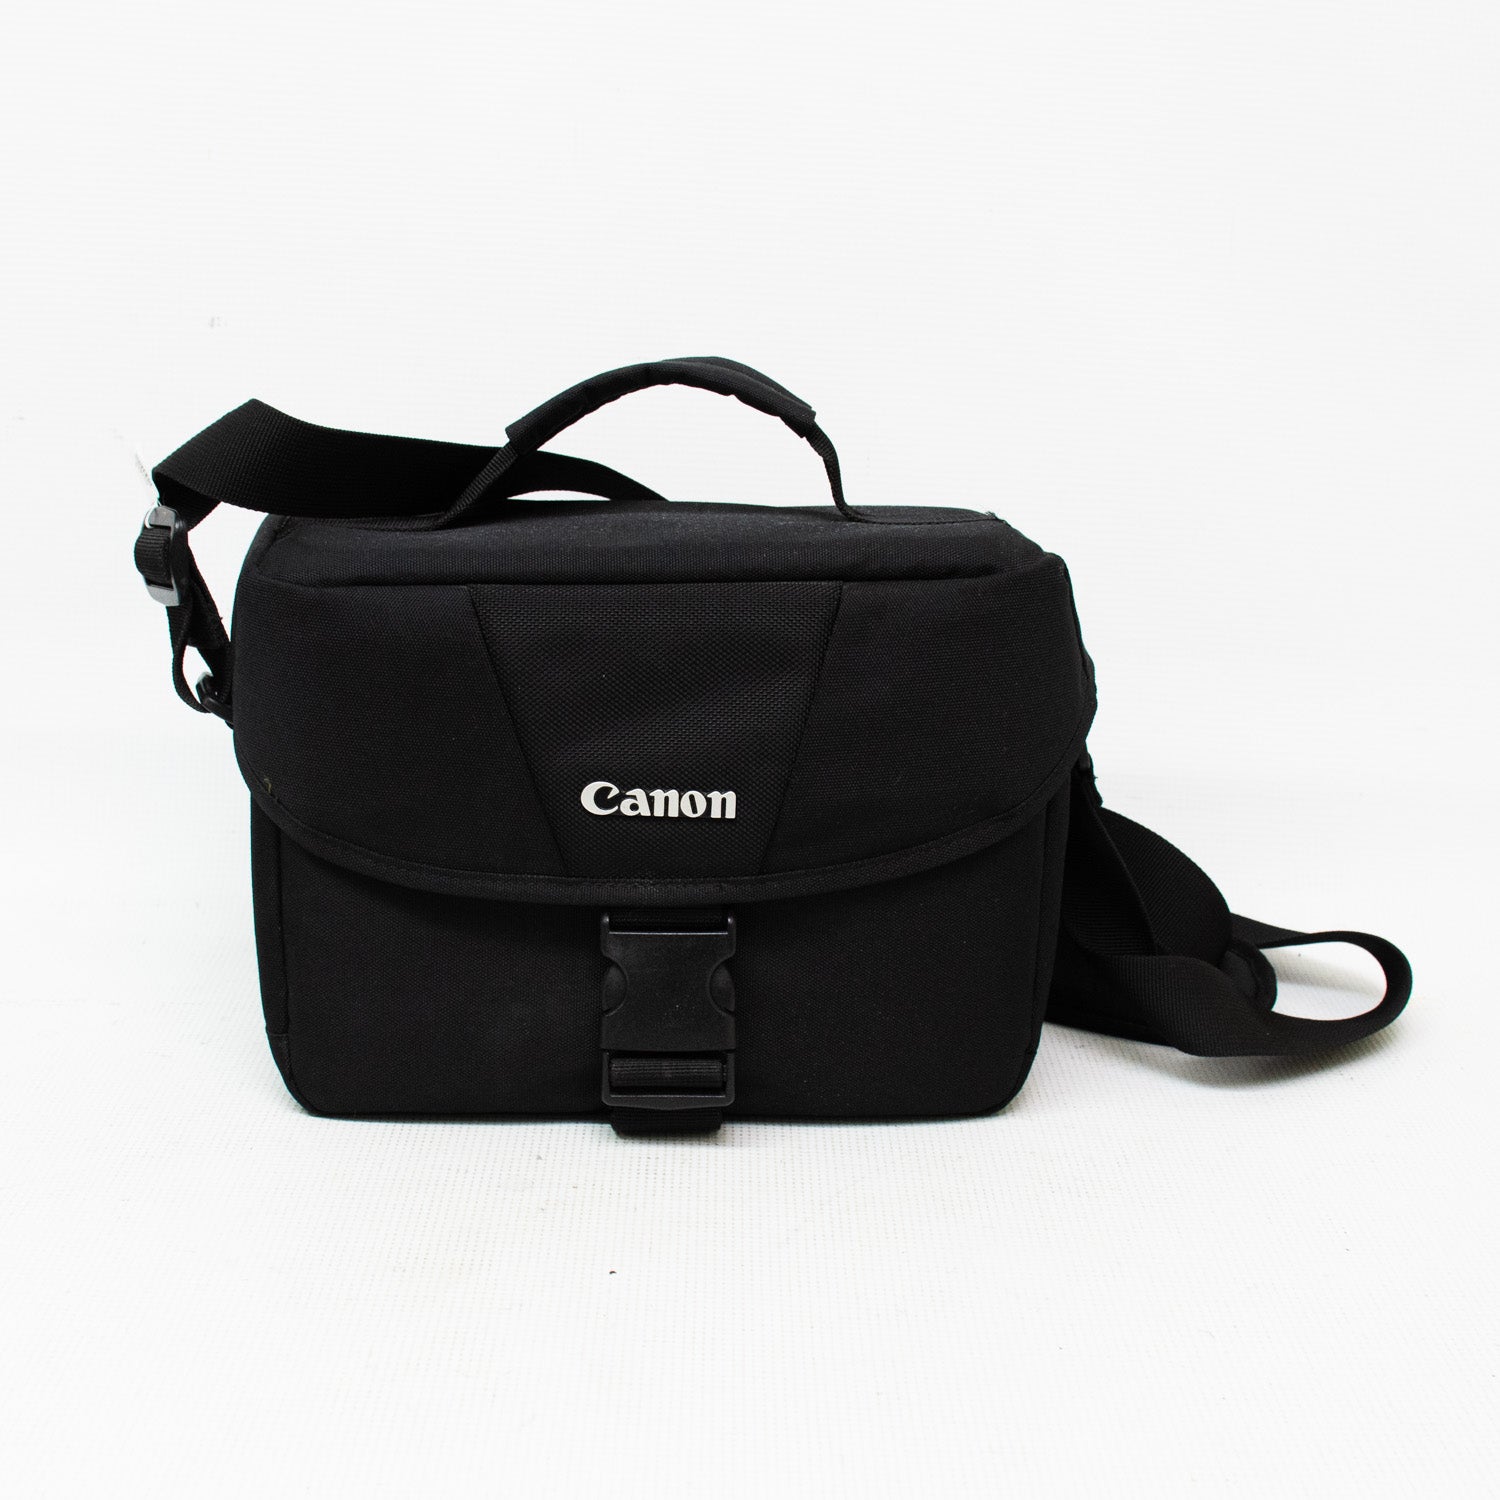 Canon Rebel T6 18MP Camera Bundle